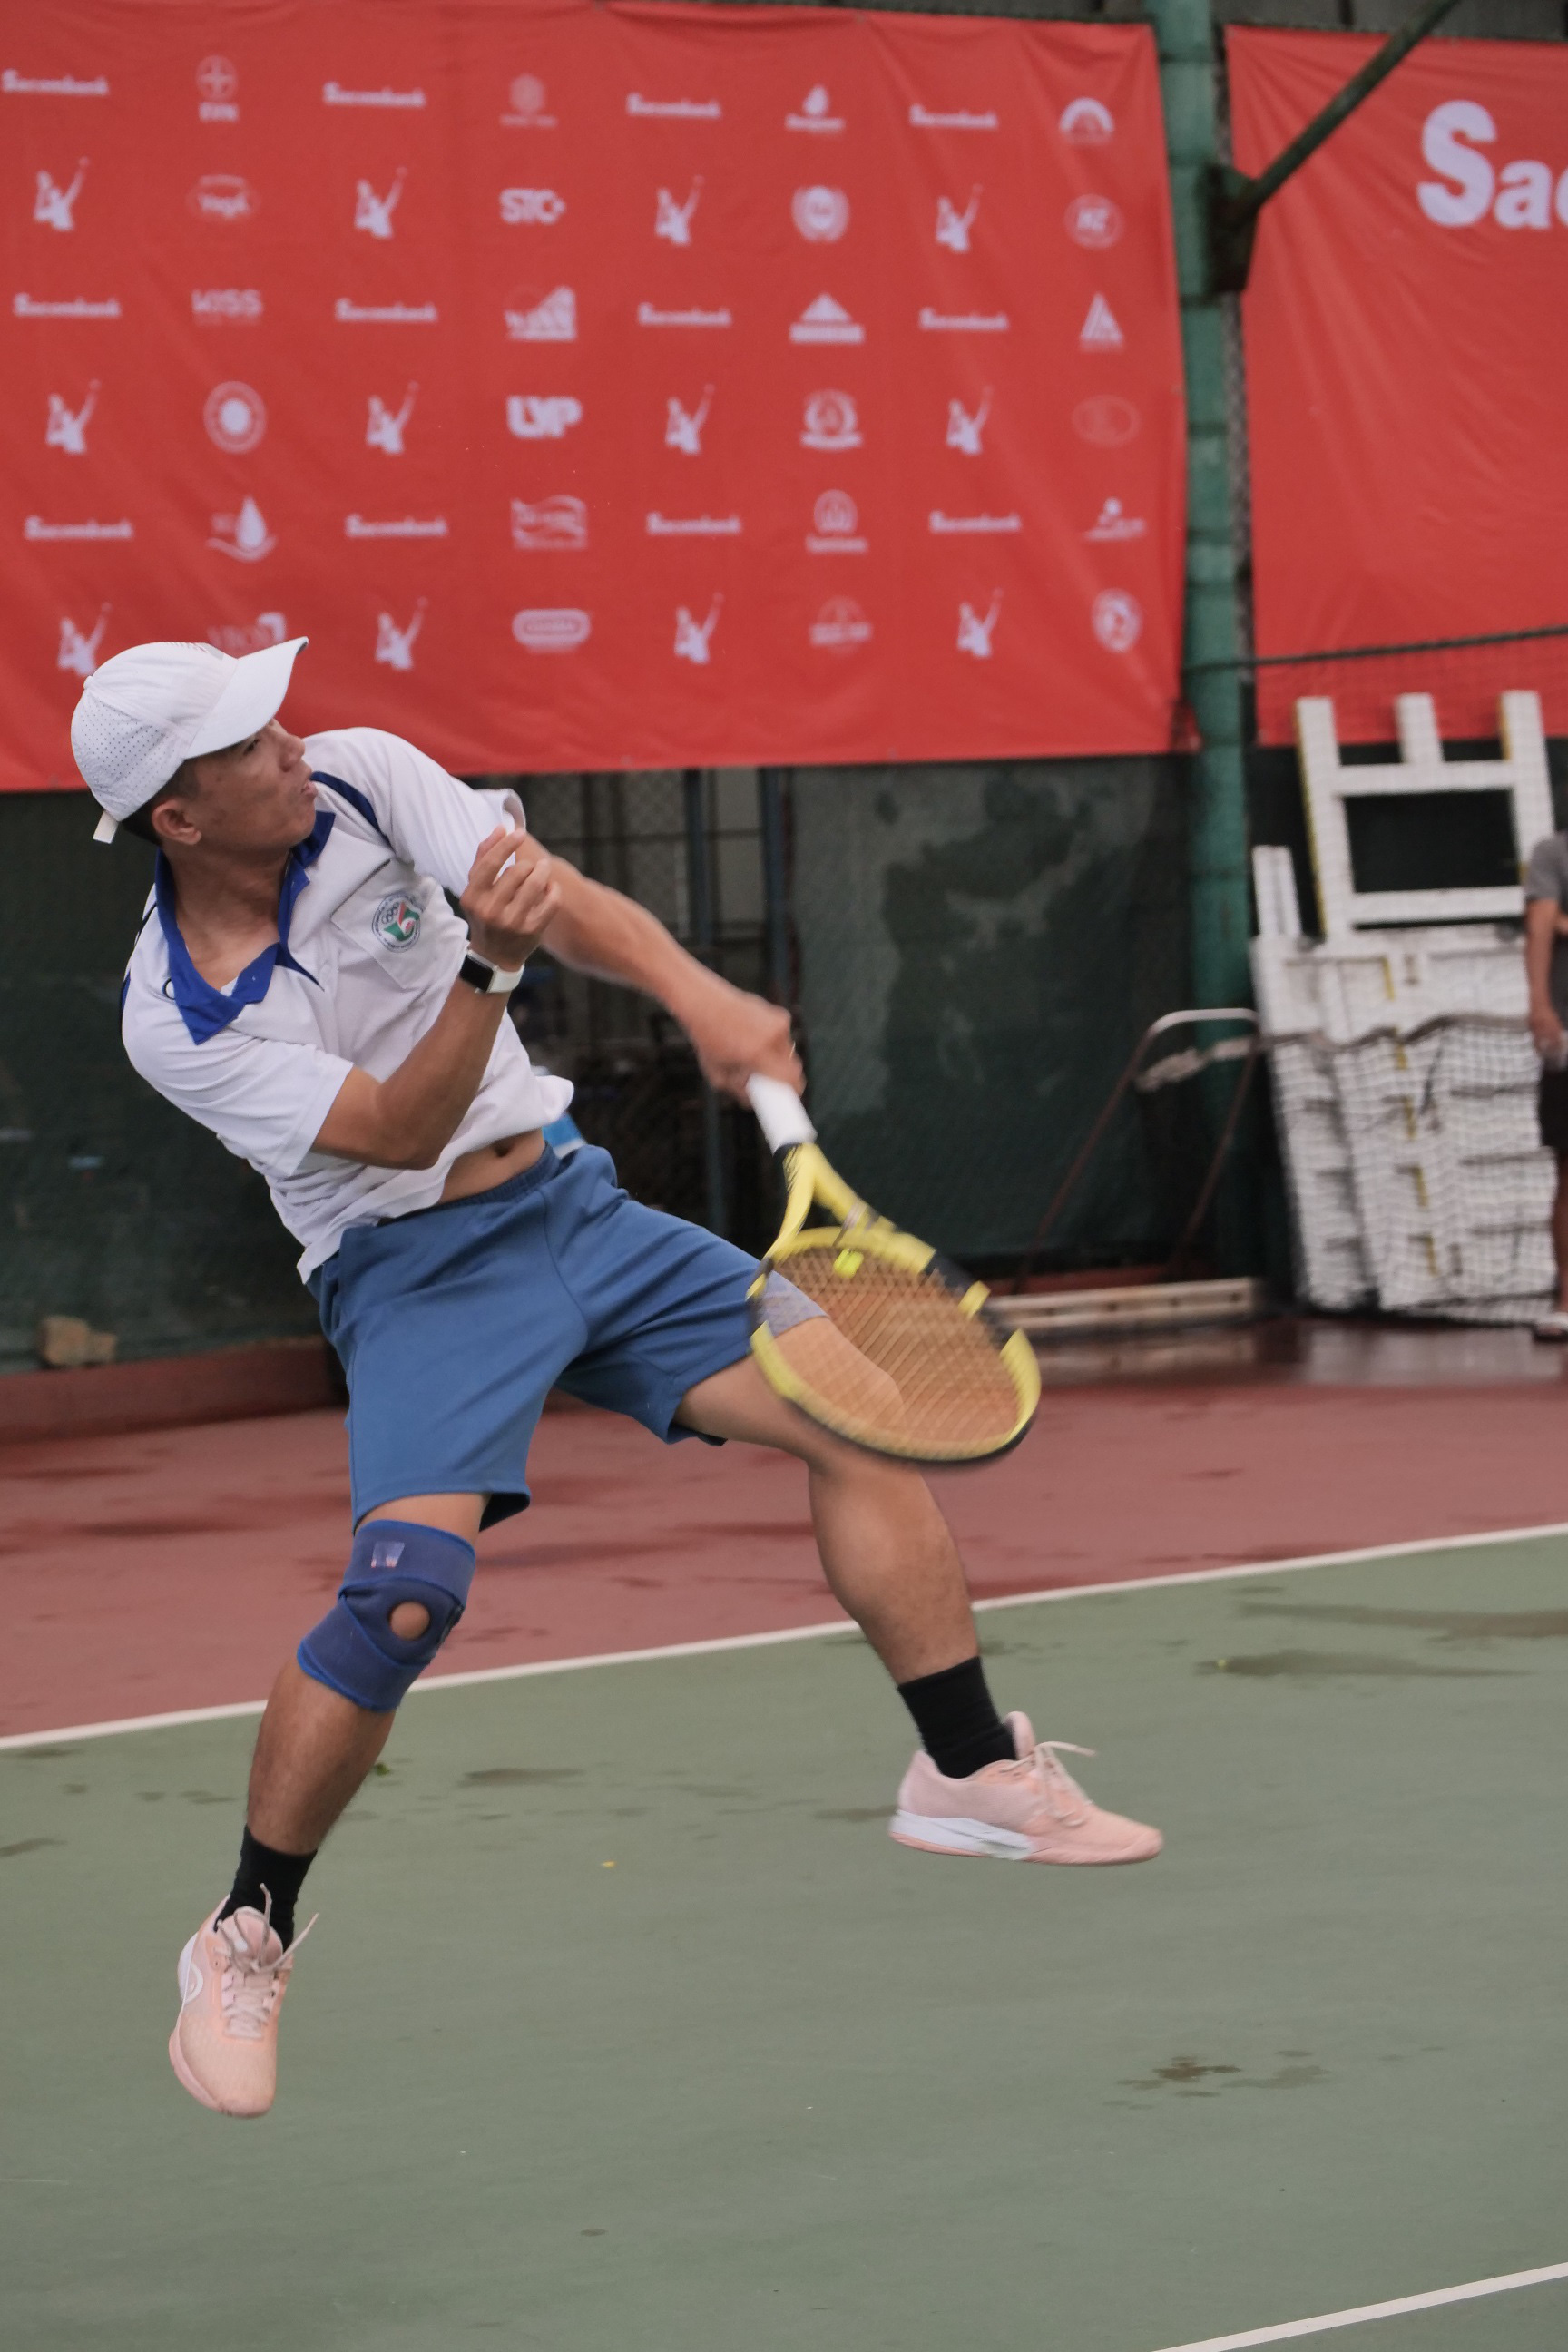  Sacombank tổ chức giải tennis chào mừng ngày Doanh nhân Việt Nam năm 2020 - Ảnh 4.